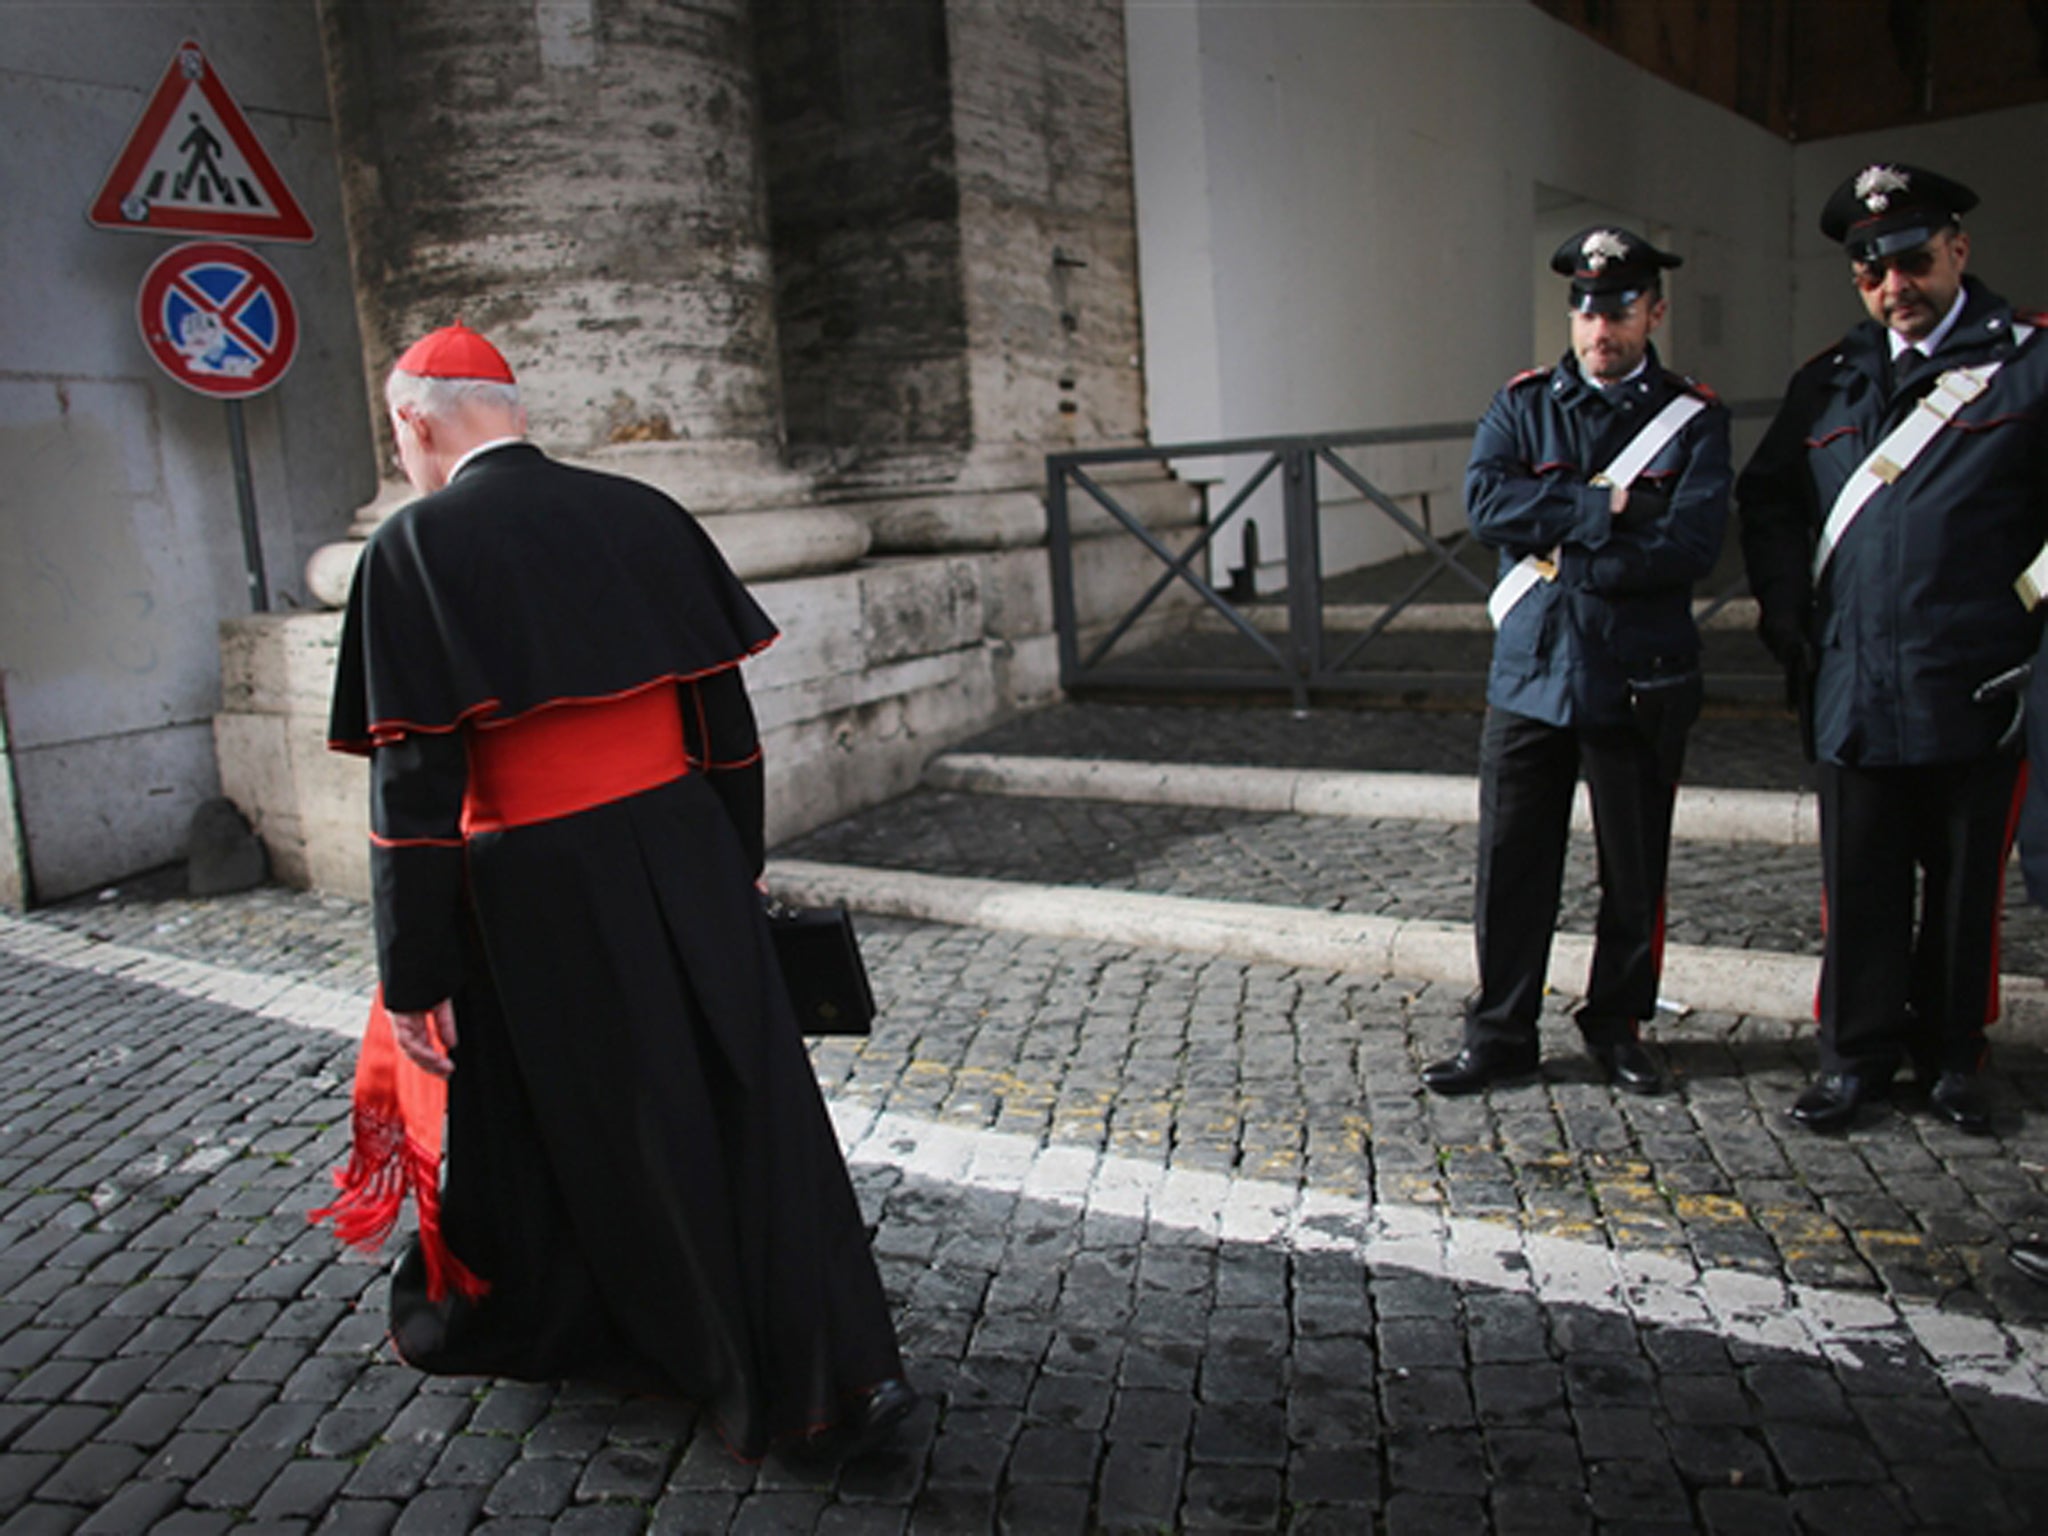 cardinal catholic outfit